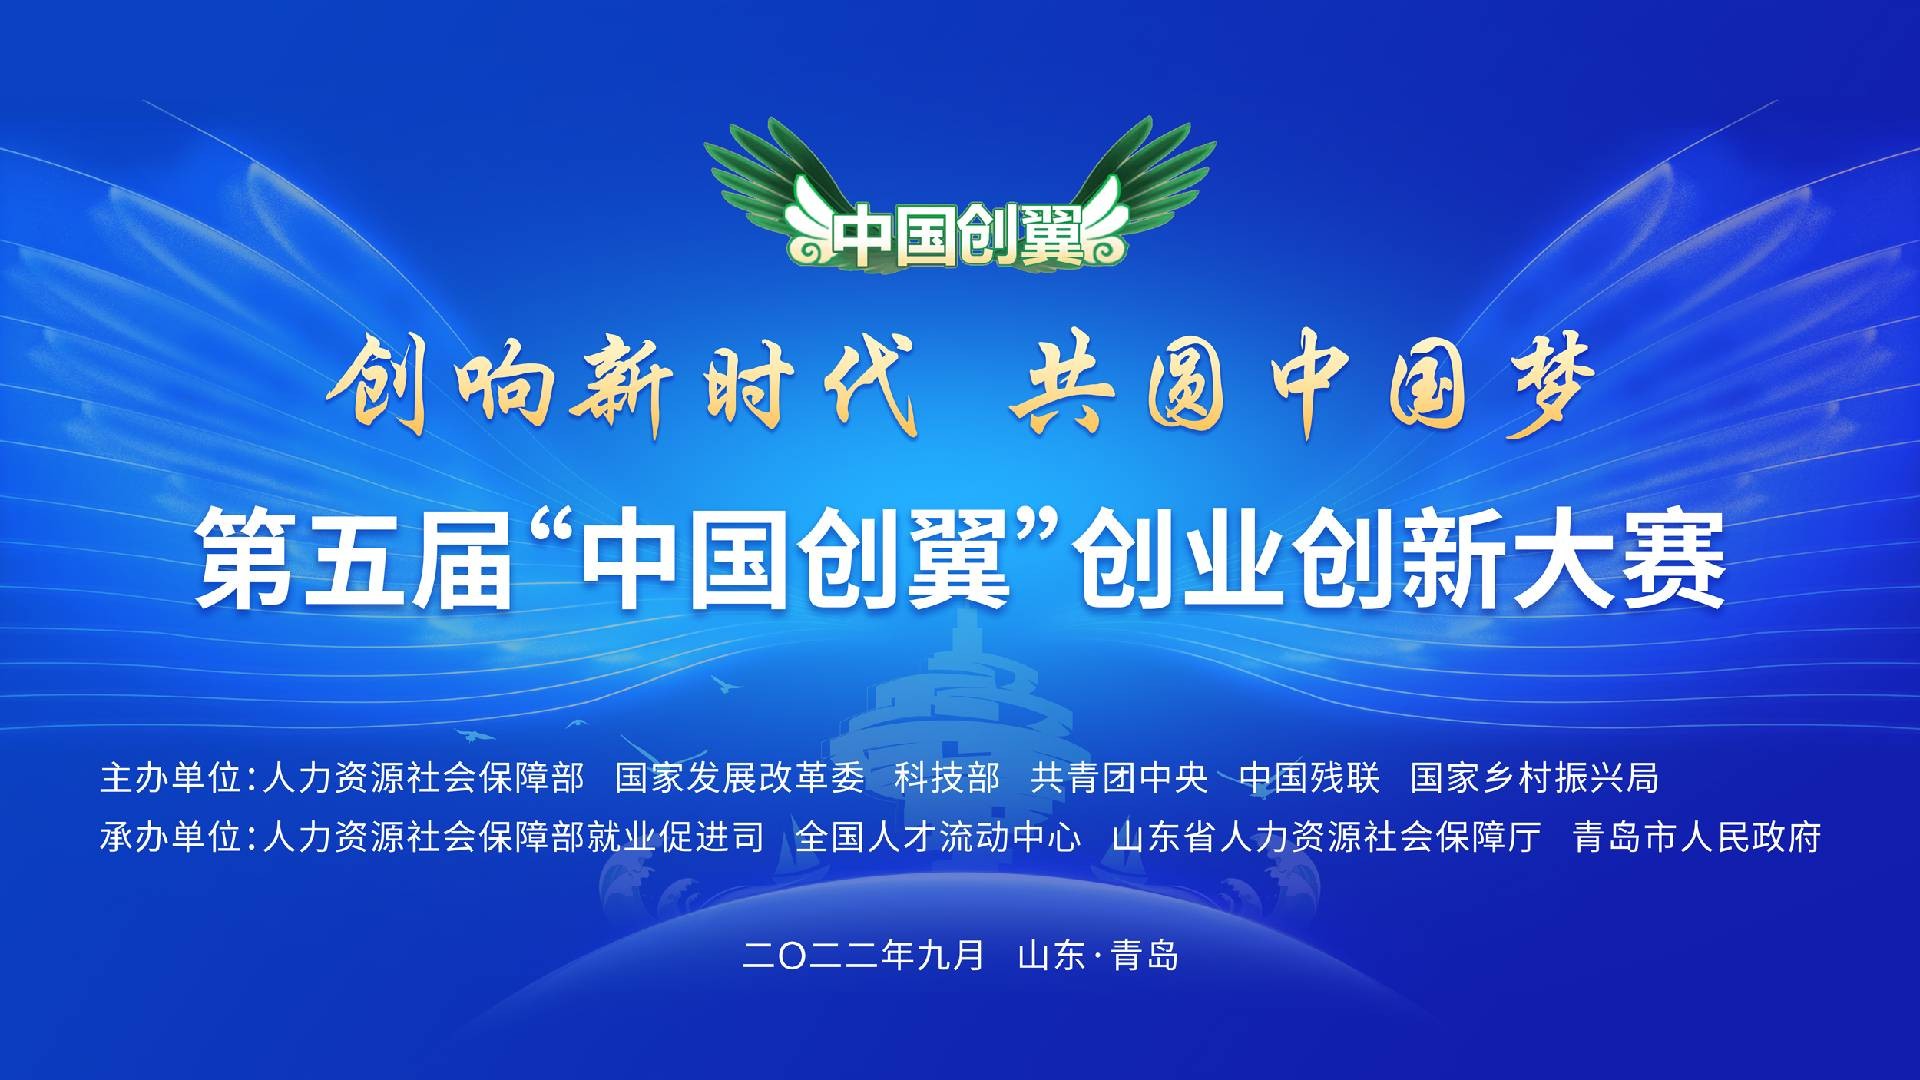 捷報頻傳，魚泡網在第五屆“中國創翼”創業創新大賽全國選拔賽斬獲佳績